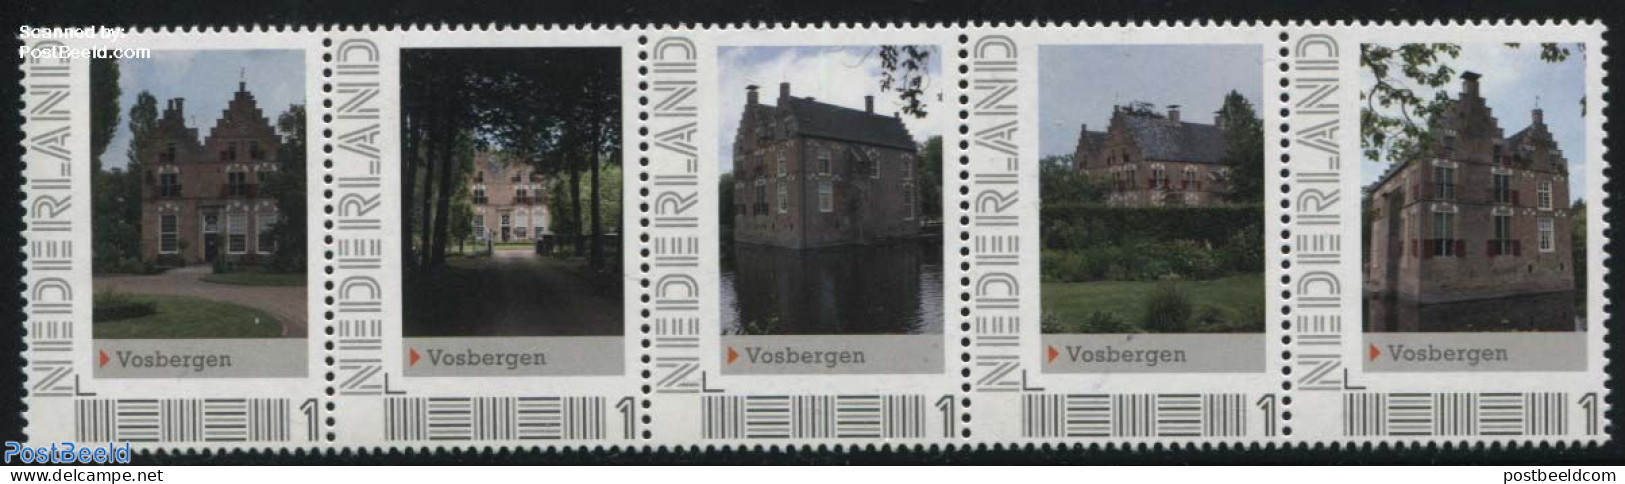 Netherlands - Personal Stamps TNT/PNL 2012 Vosbergen 5v [::::], Mint NH, Castles & Fortifications - Kastelen